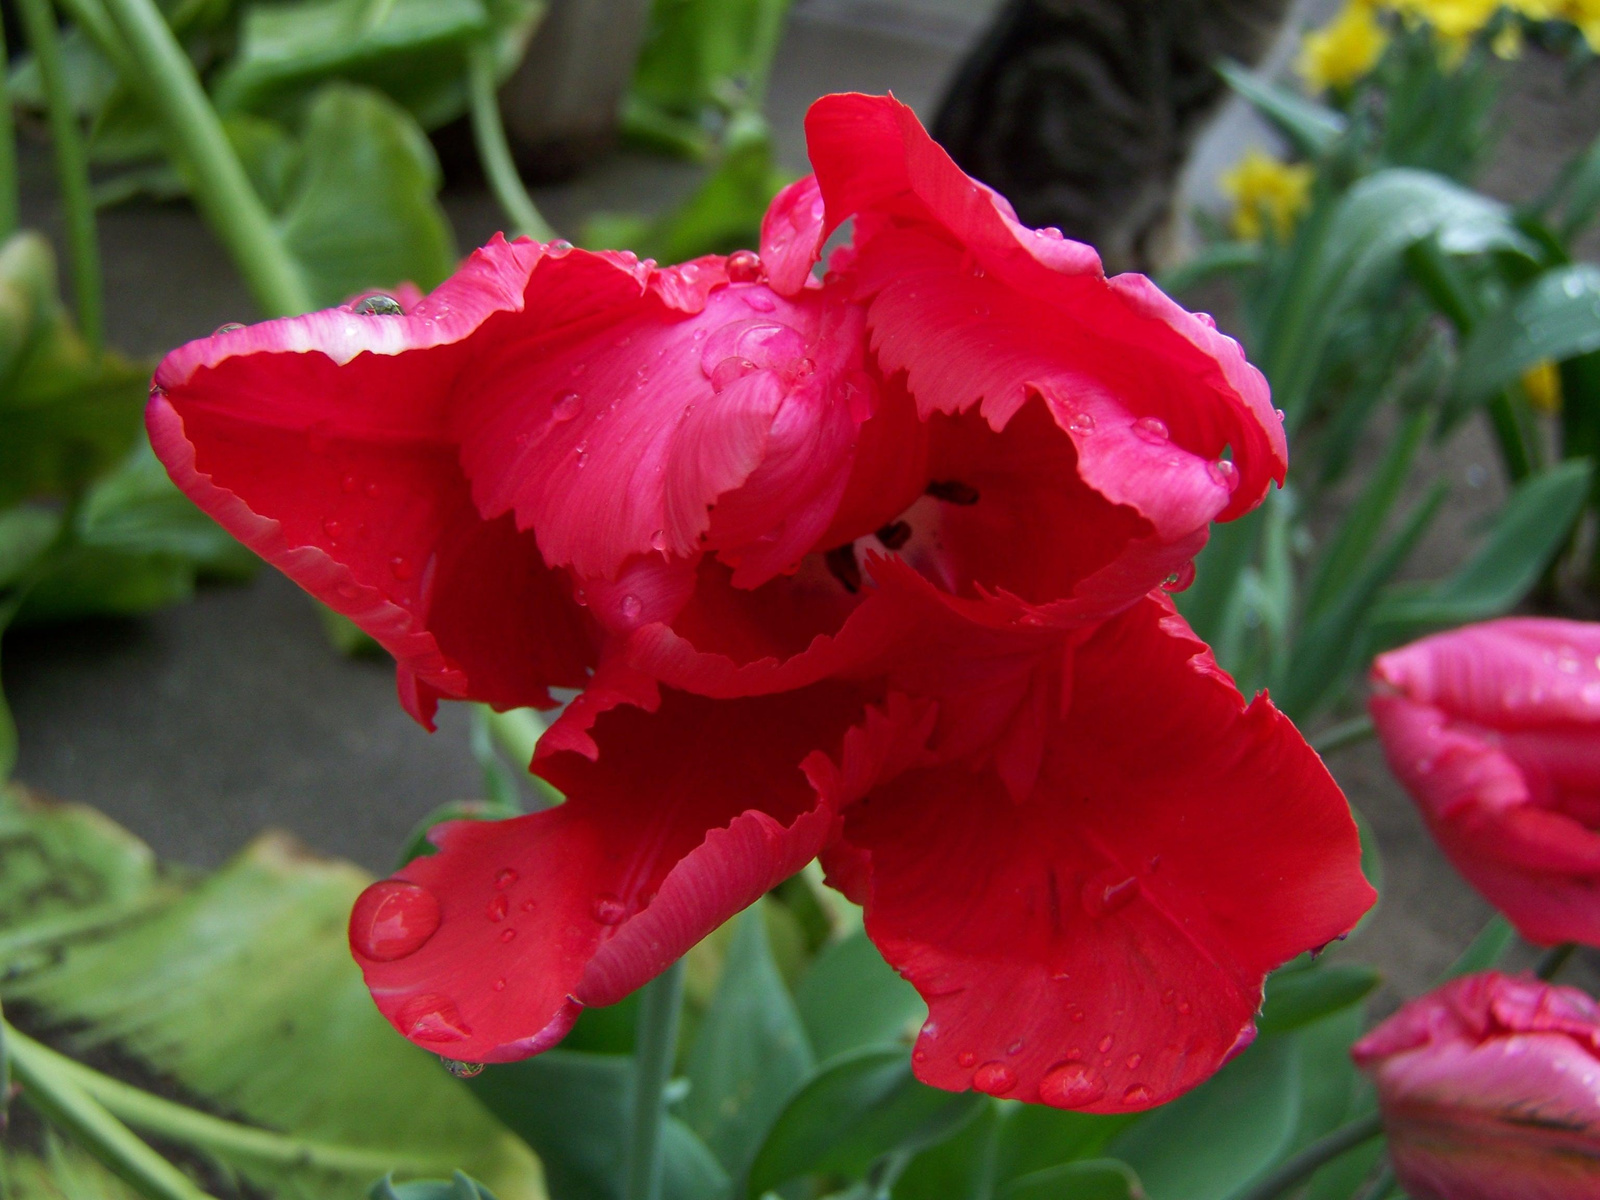 Cakkosszélű tulipán eső után